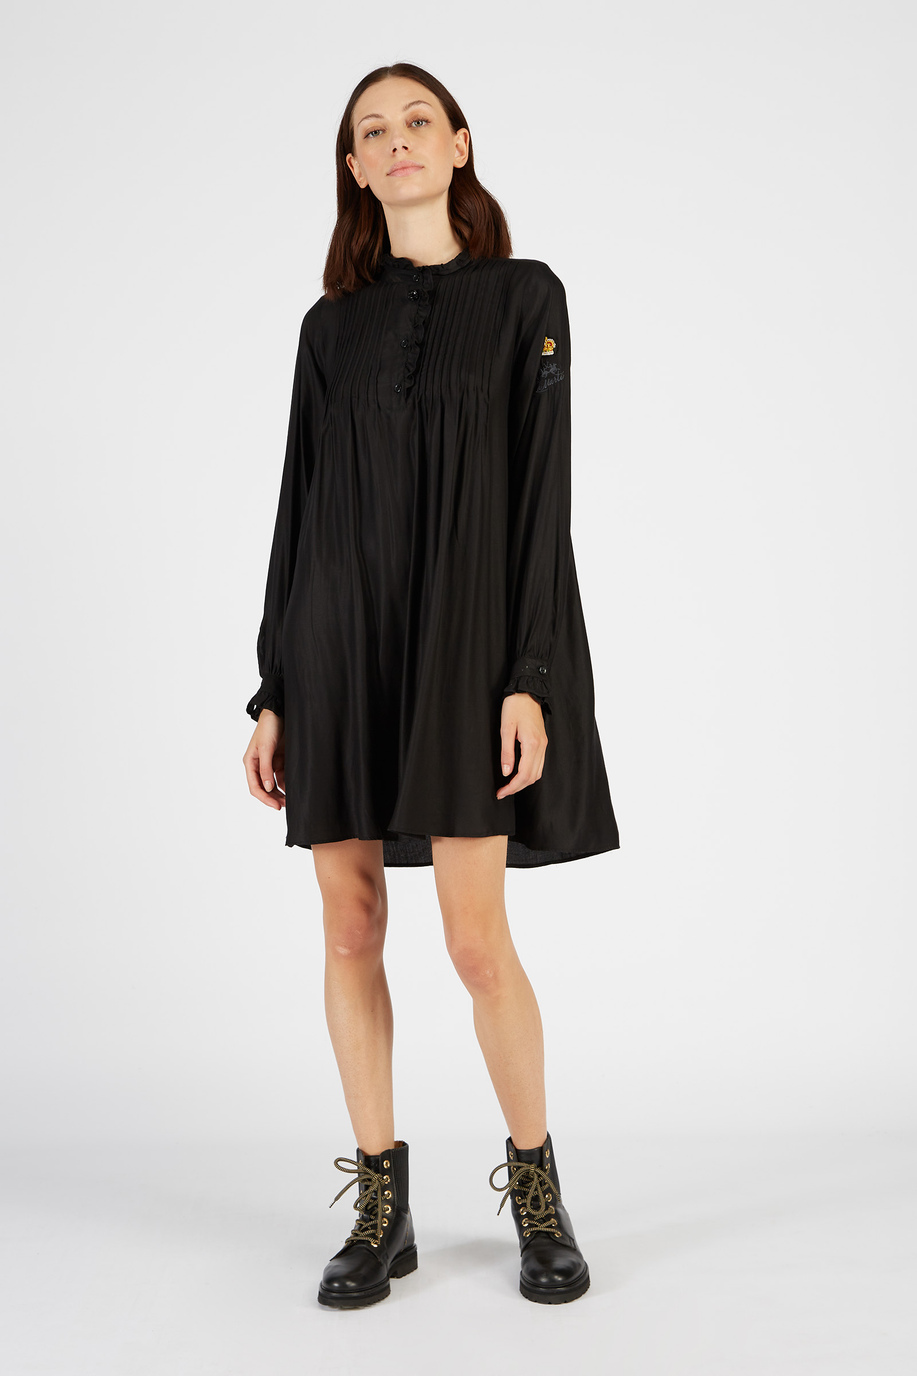 Dress long sleeves England solid color - Elegant looks for her | La Martina - Official Online Shop